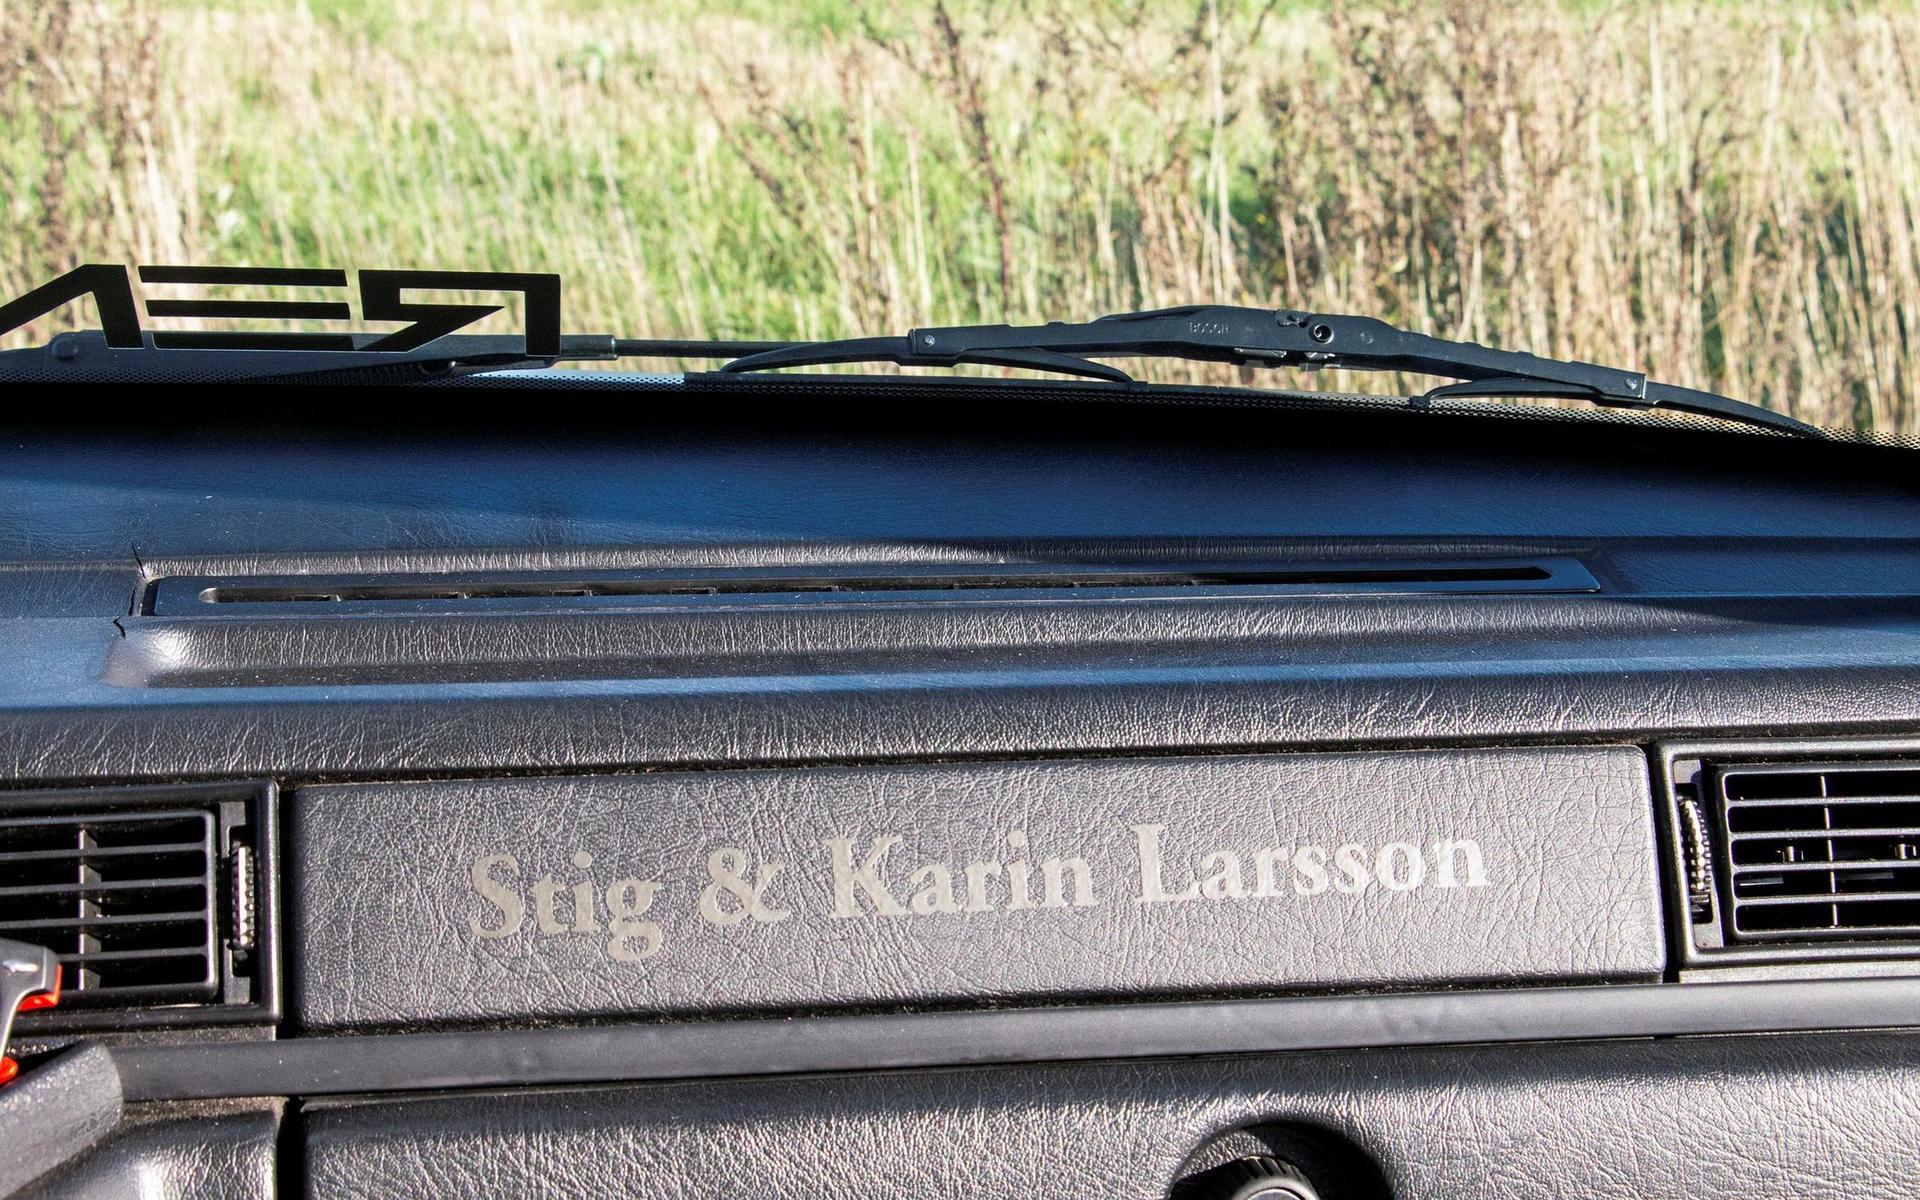 Stig och Kerstin Larsson, Kalles morföräldrar har sina namn inne i kupén.